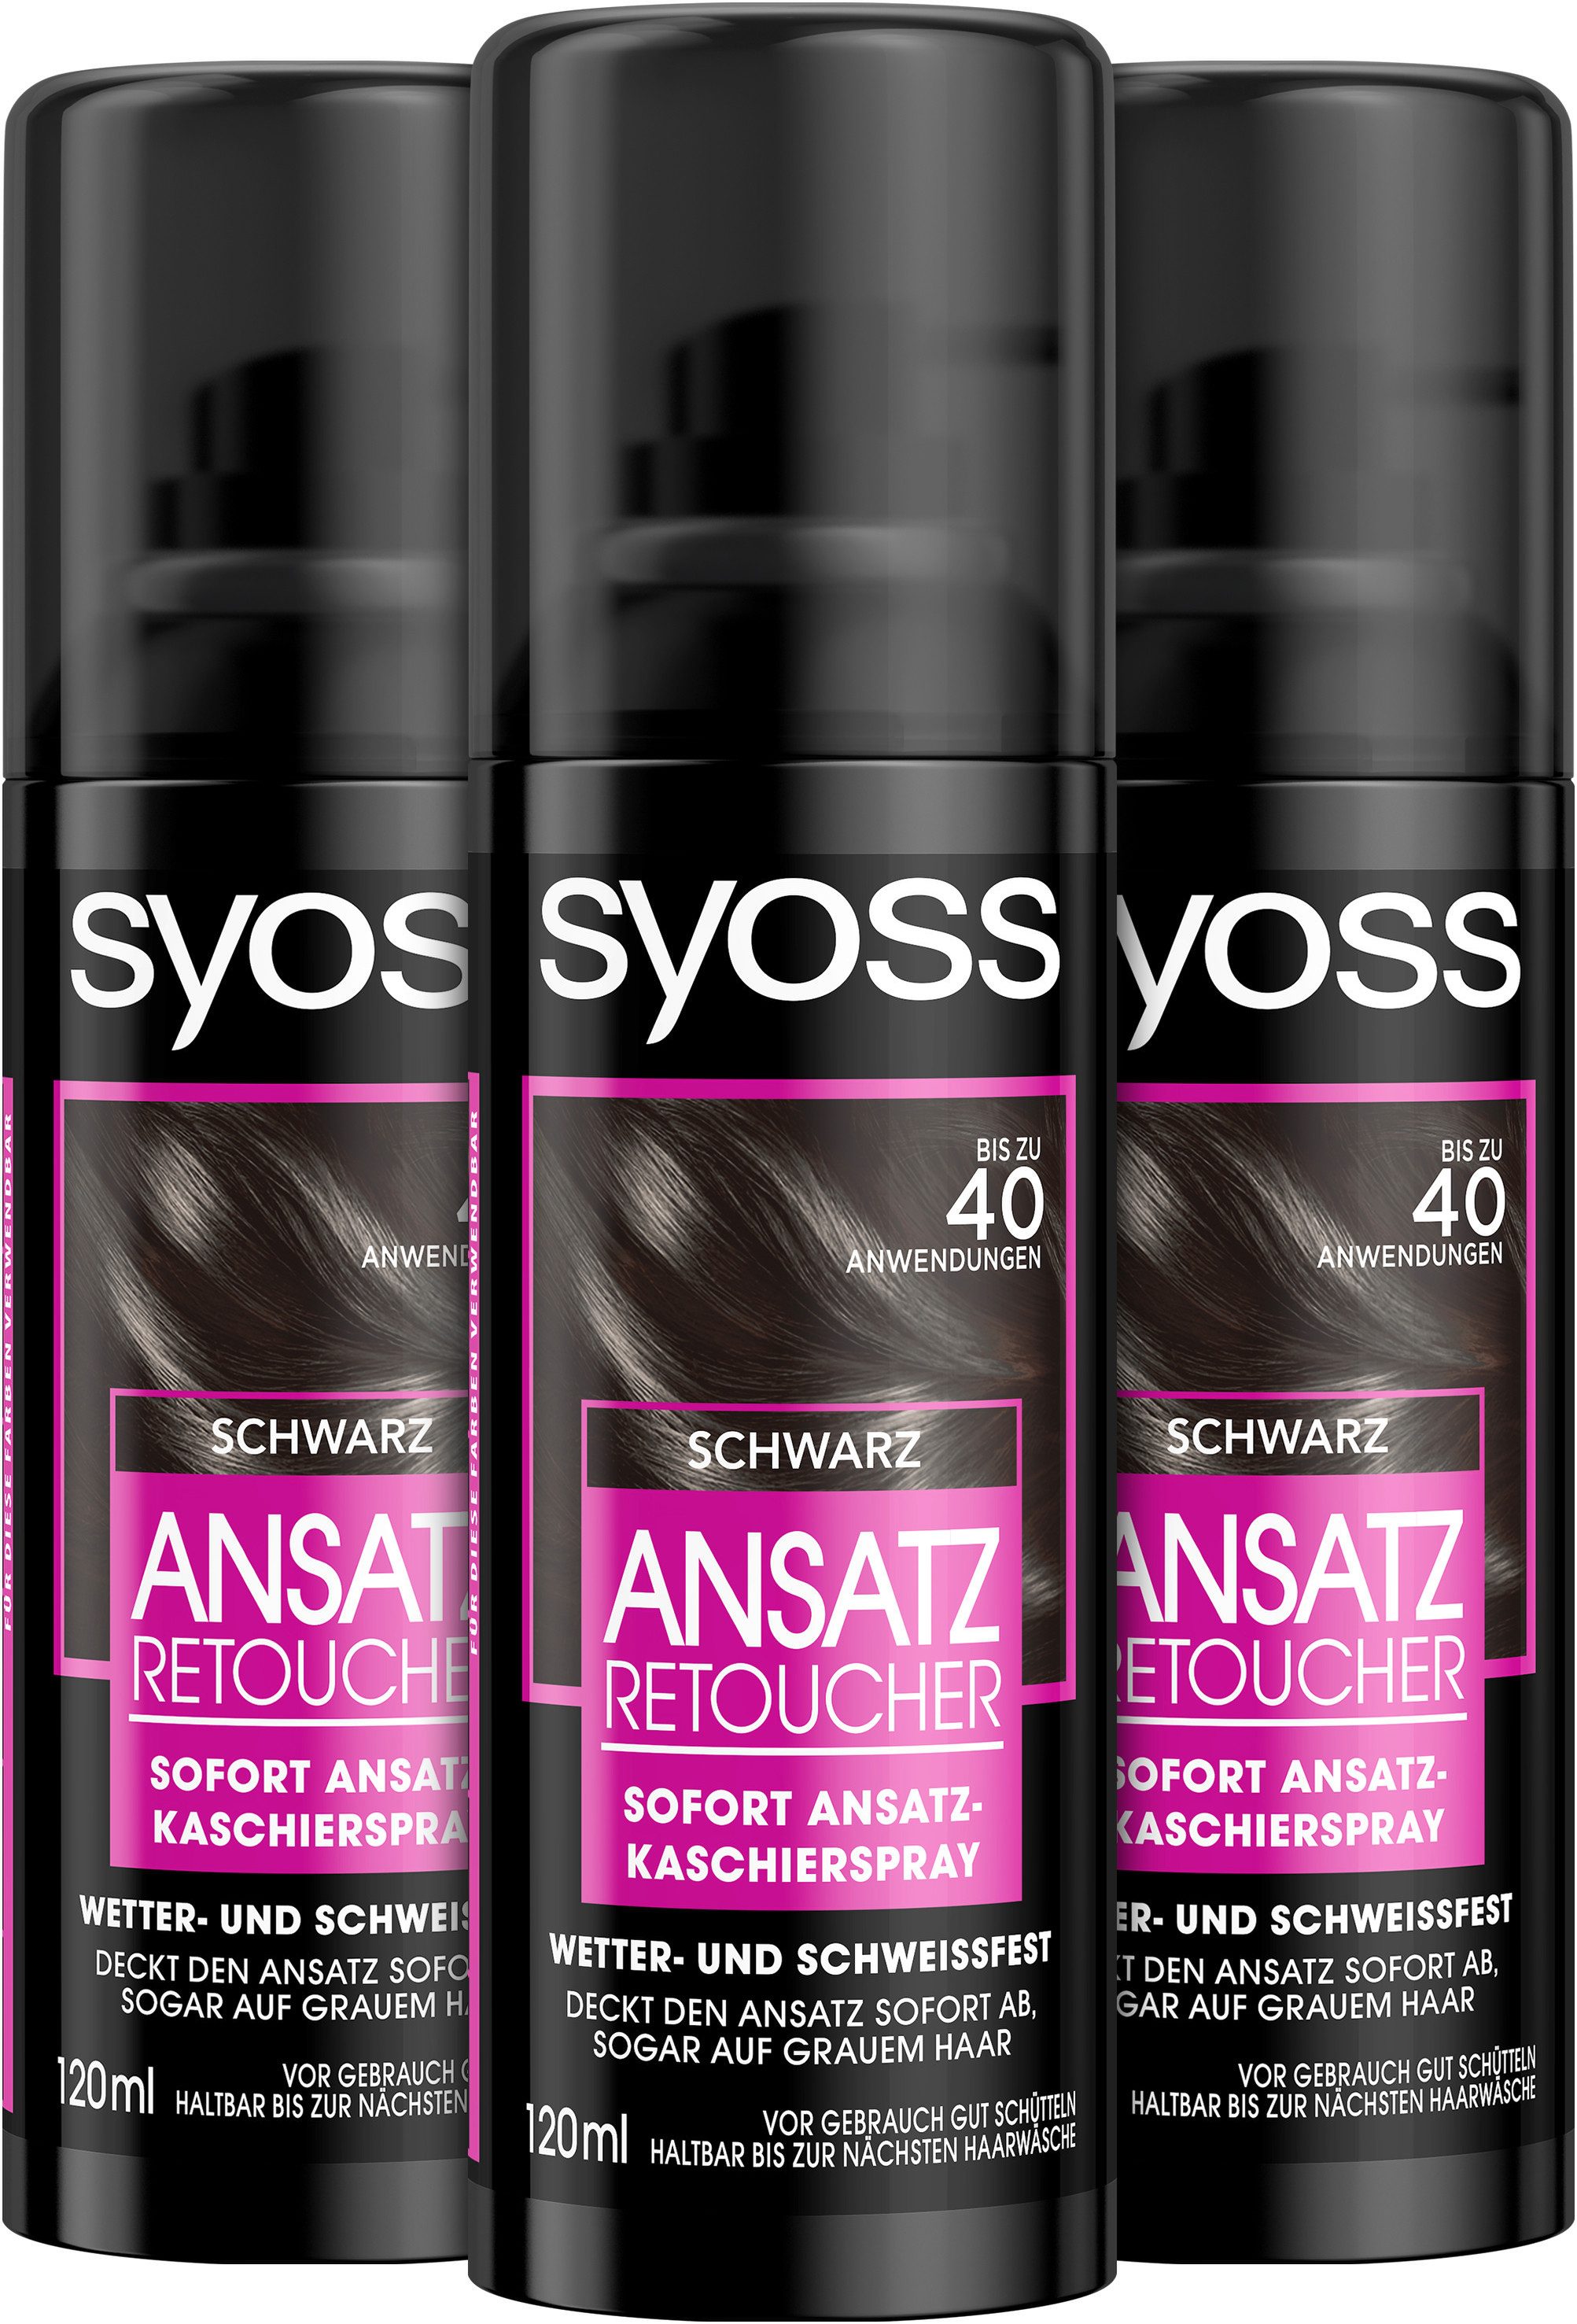 Syoss Haaransatz-Spray Retoucher Kaschierspray Schwarz, Vorteilspack, 3-tlg., 3x 120 ml, deckt hellere und graue Haaransätze ab